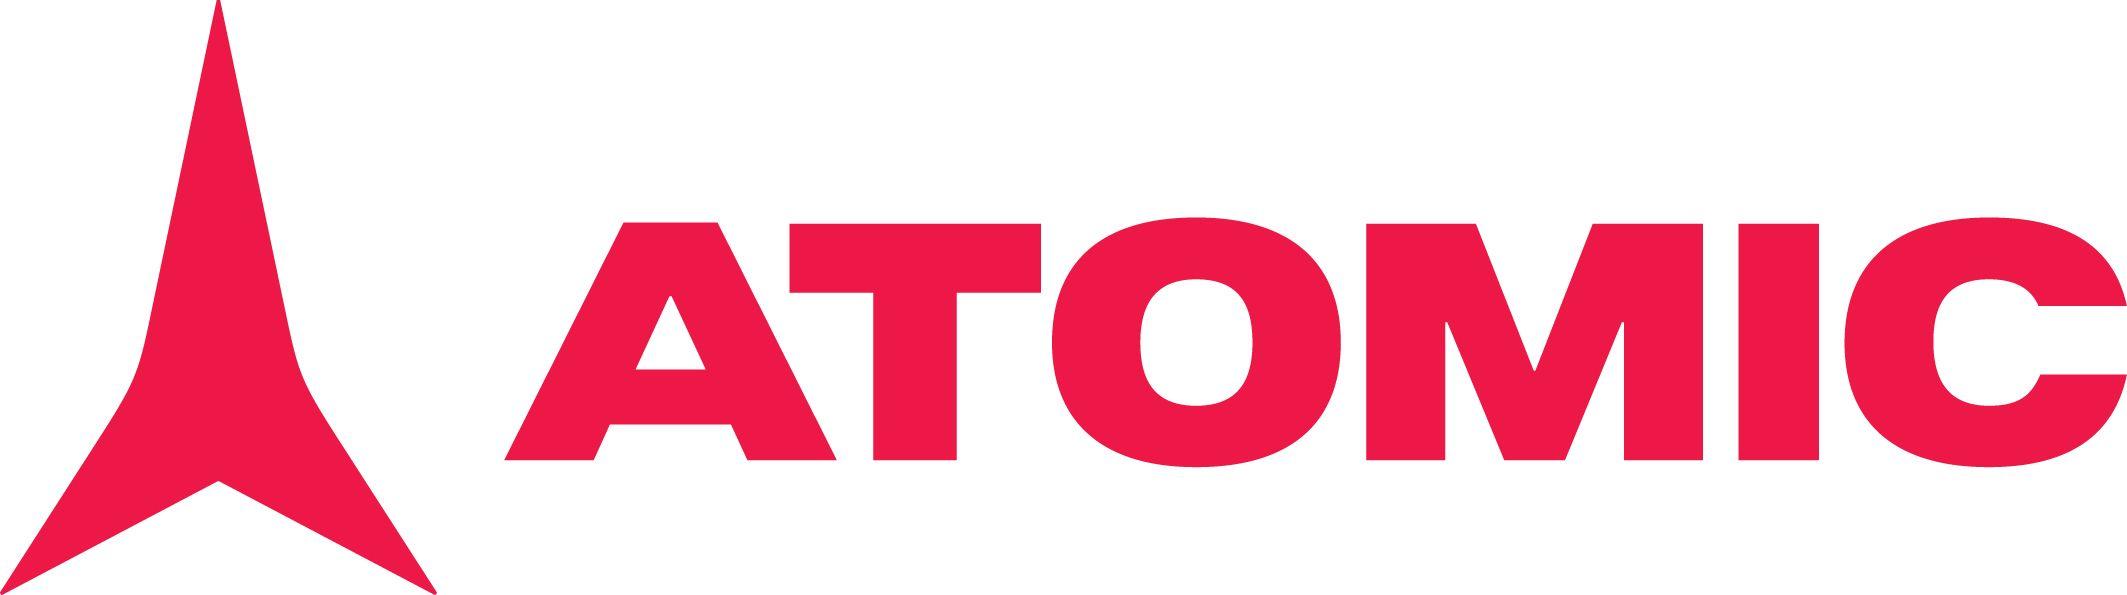 Atomic Logo - File:ATOMIC LOGO ROT.jpg - Wikimedia Commons